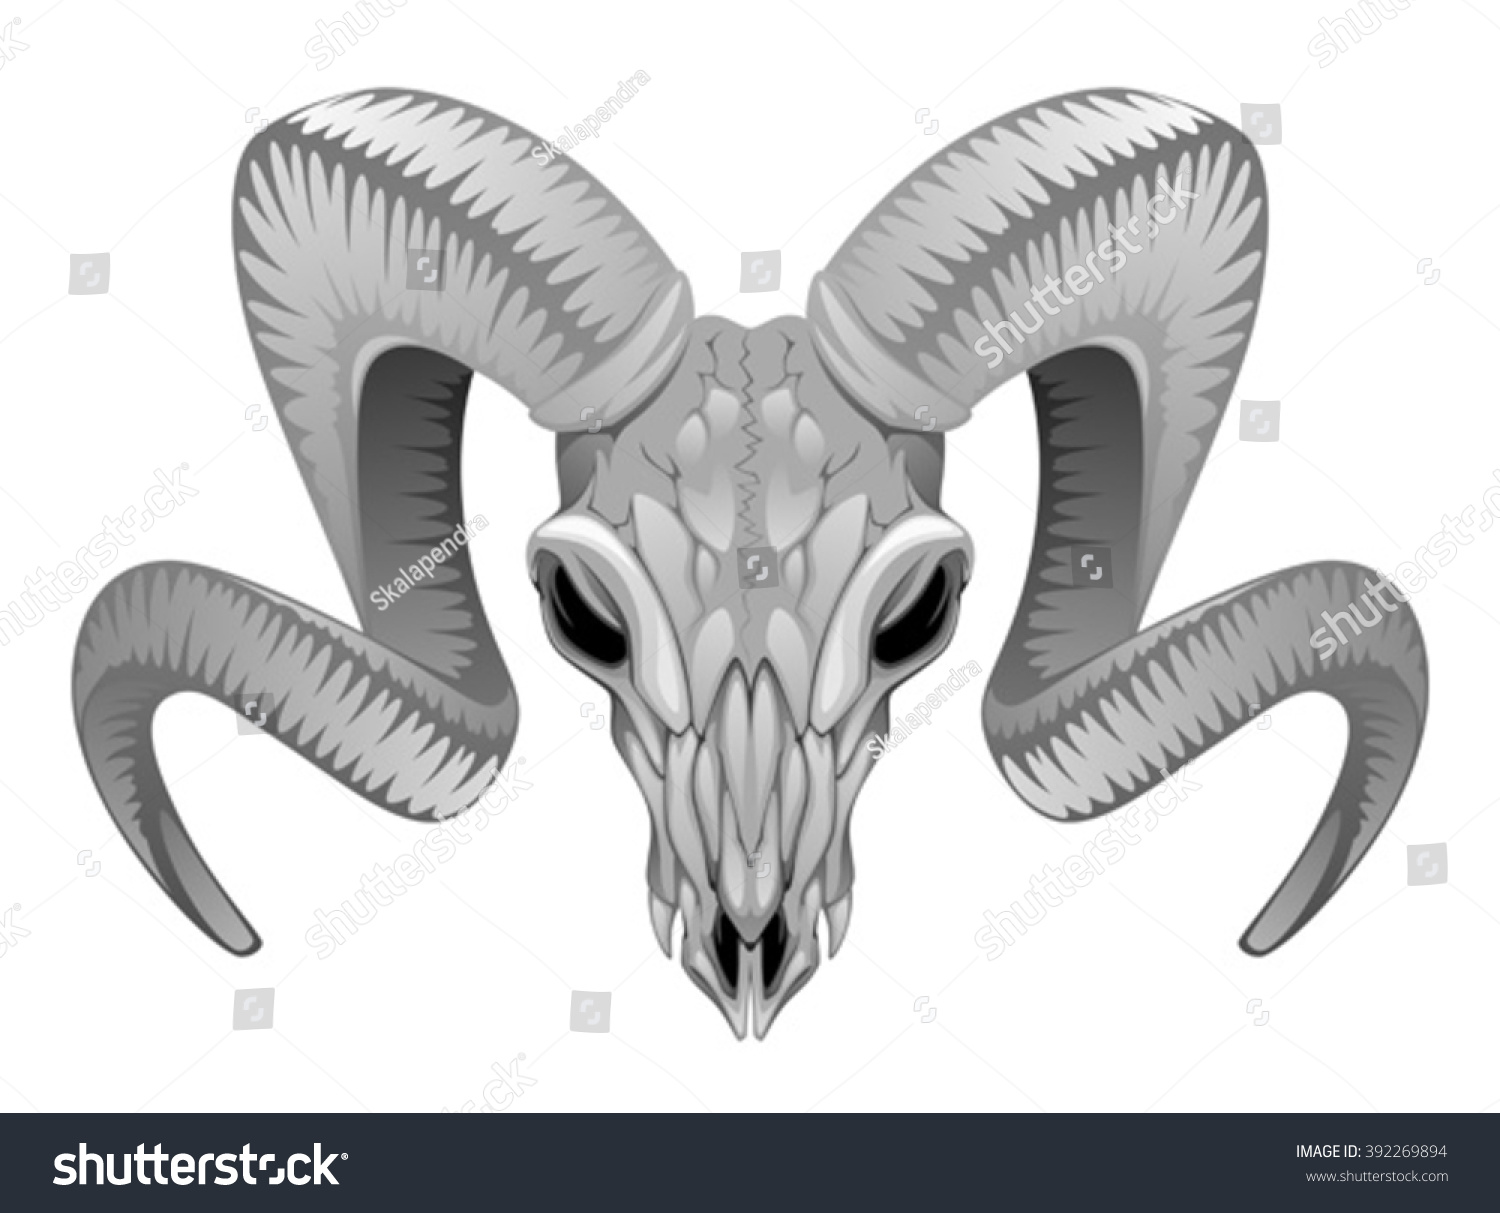 Ram Skull Stock Vector Illustration 392269894 : Shutterstock